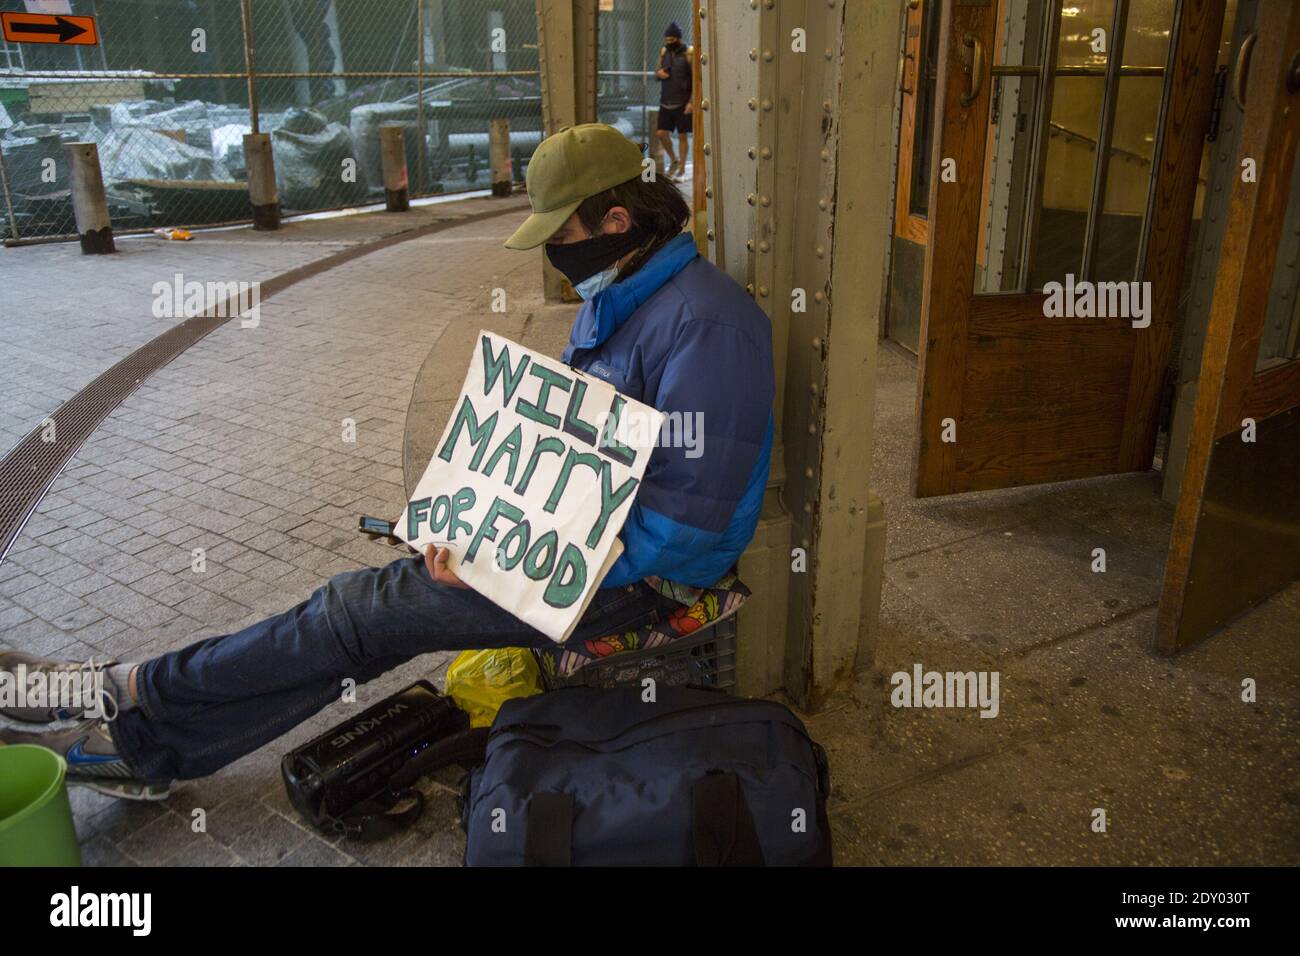 Un homme sans abri avec un sens de l'humour se trouve devant une entrée du Grand Central terminal à Manhattan, New York. Son panneau indique va se marier pour la nourriture. Banque D'Images